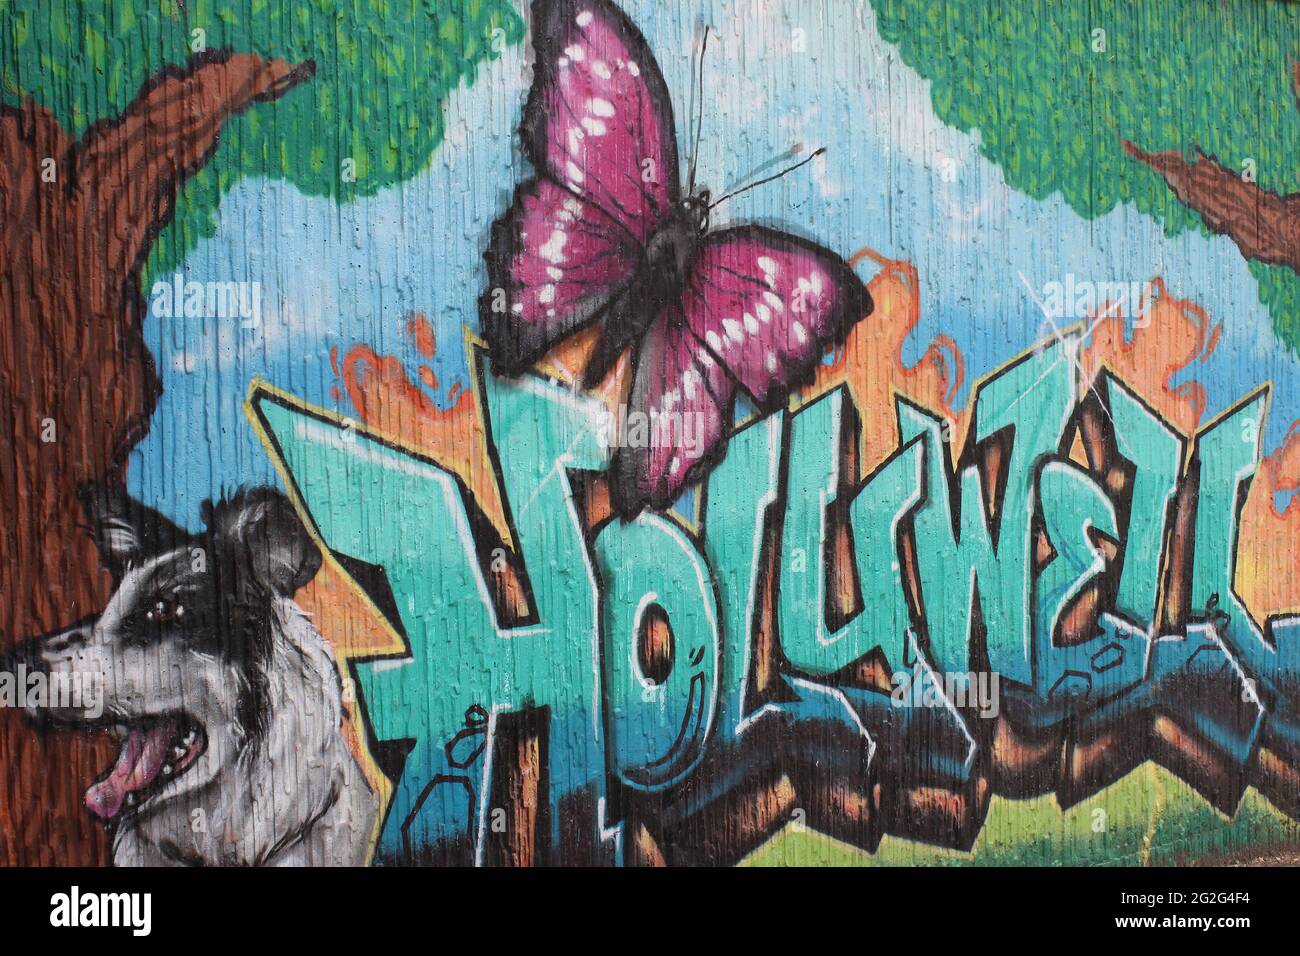 Holywell Graffiti Stock Photo